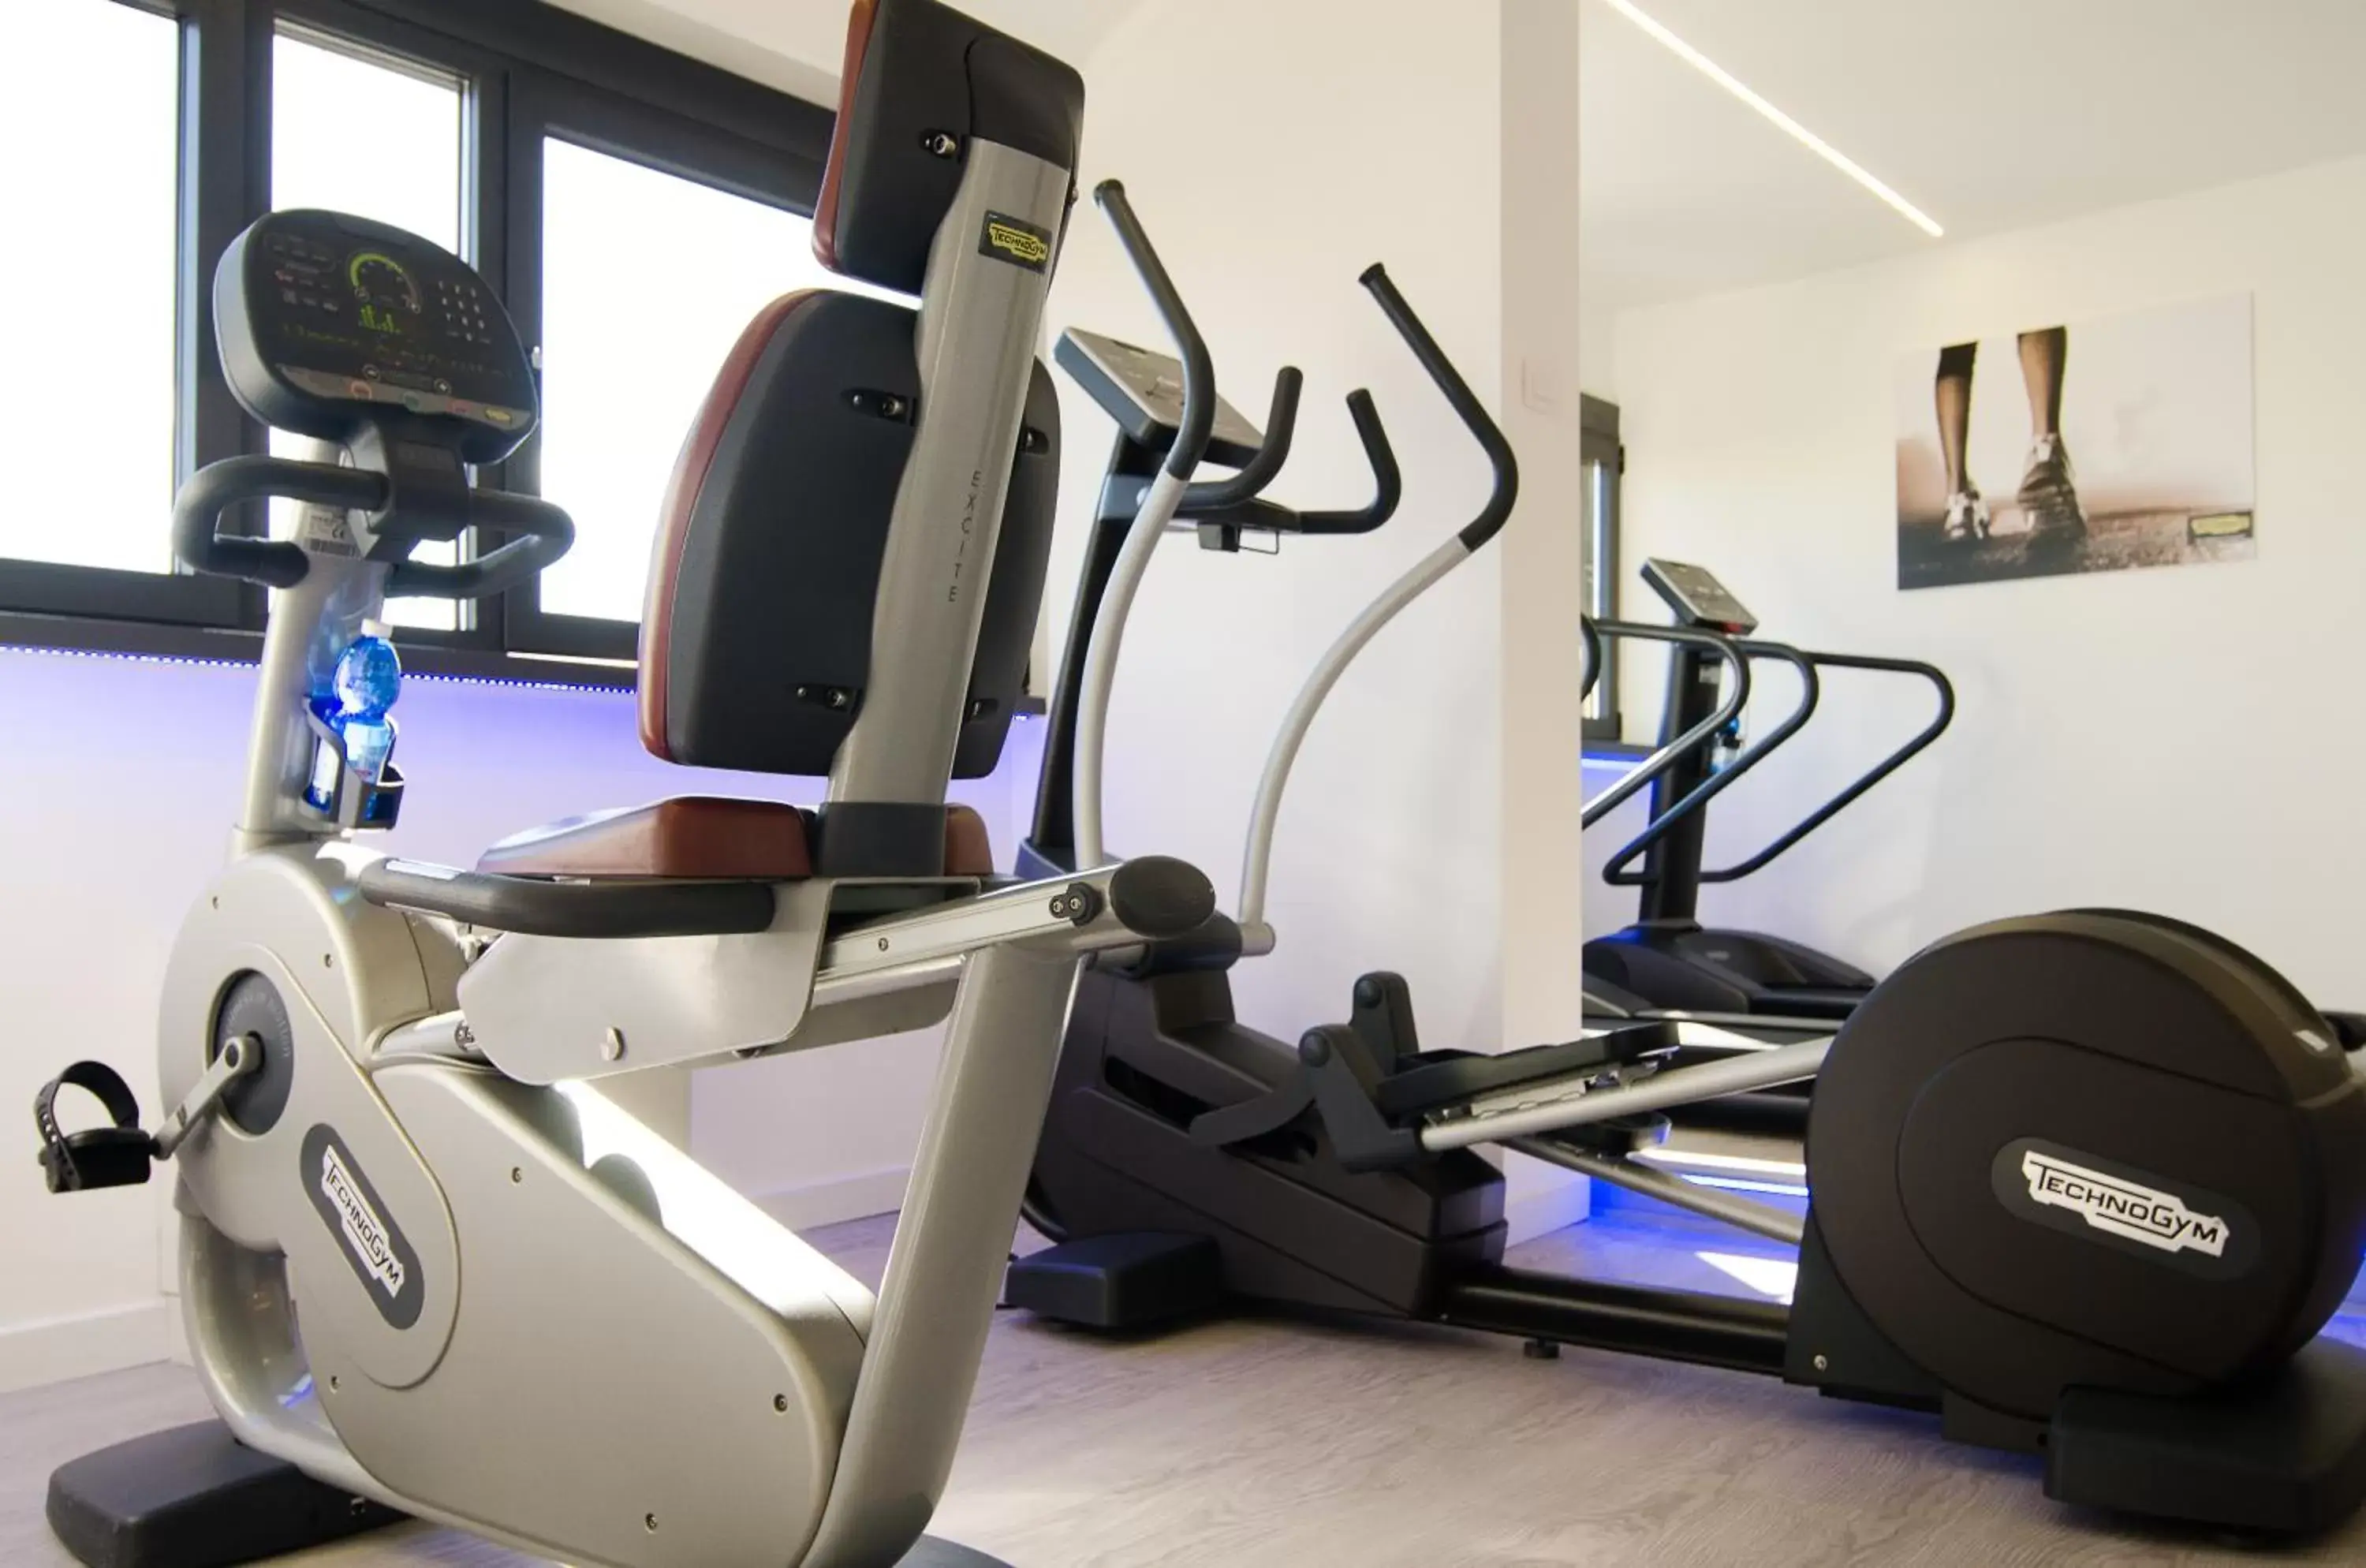 Fitness centre/facilities, Fitness Center/Facilities in Hotel Dei Congressi